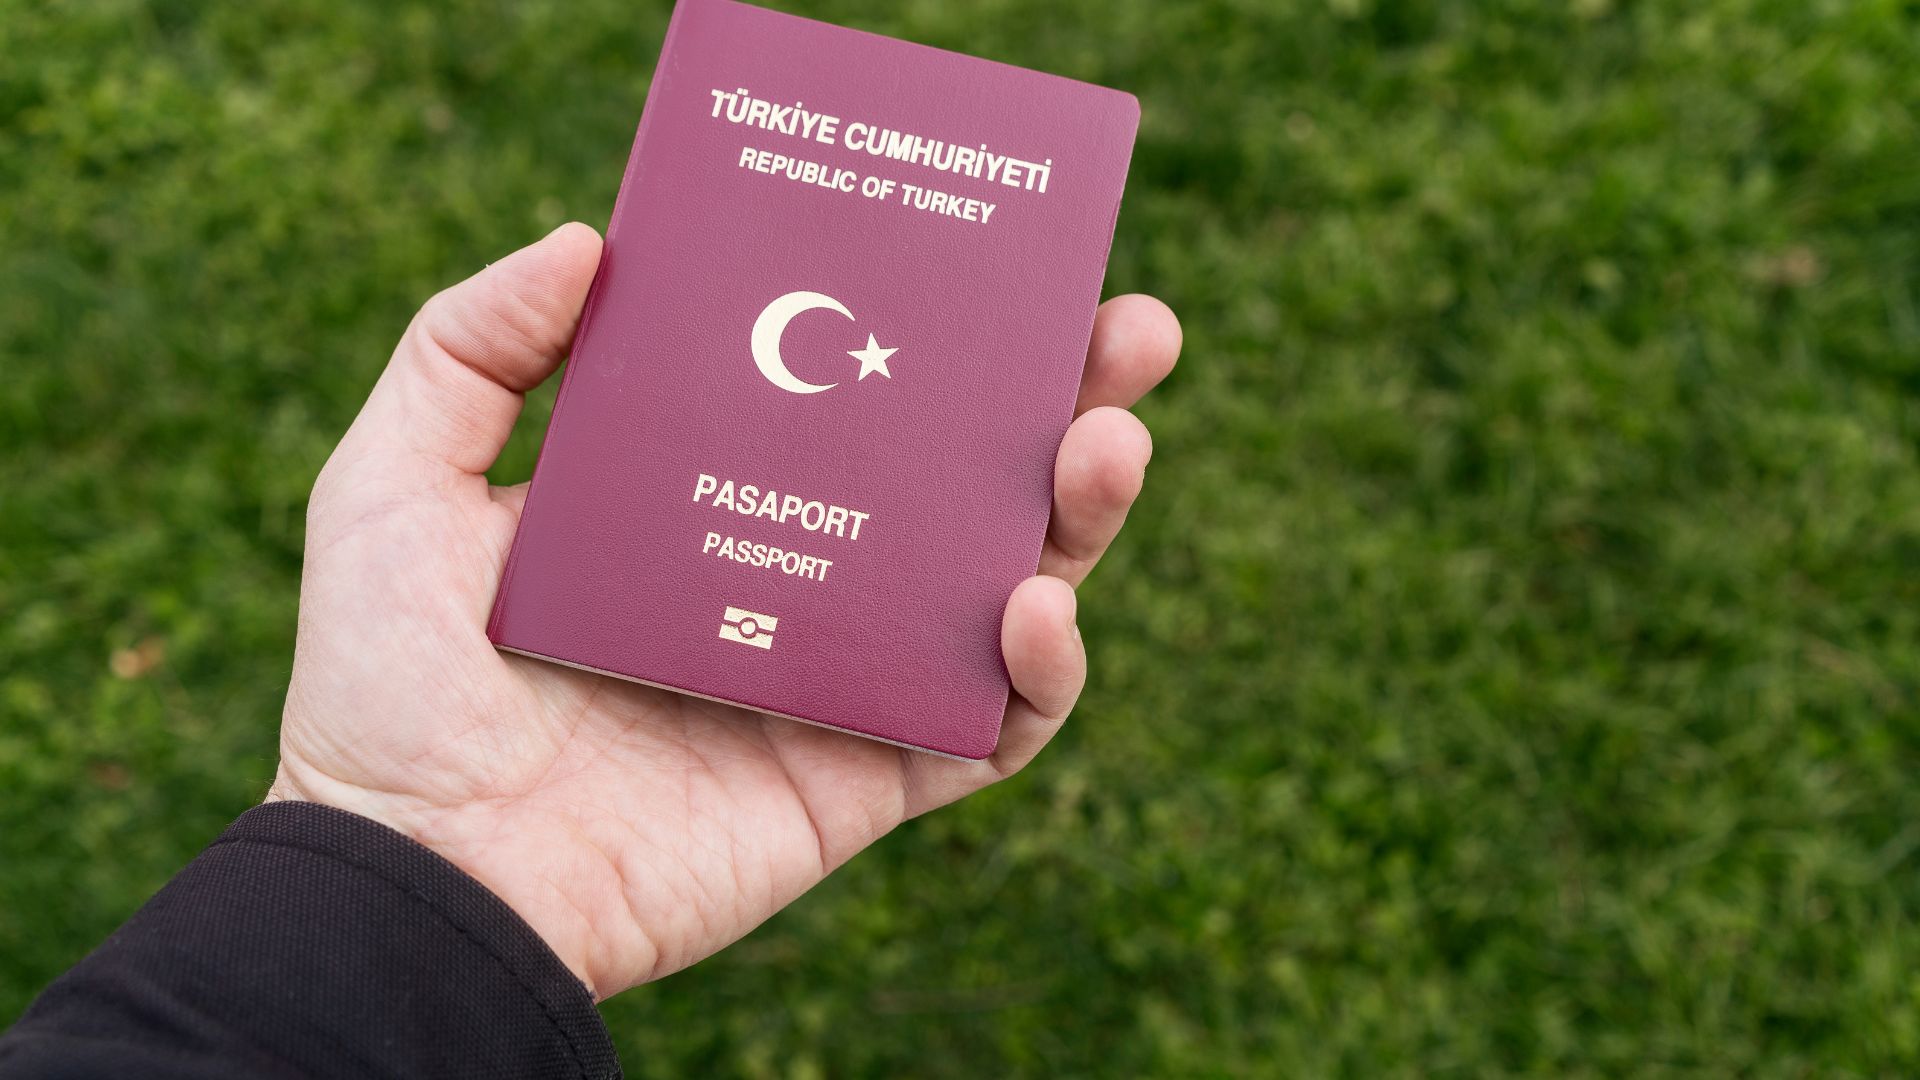 tukish passport 2